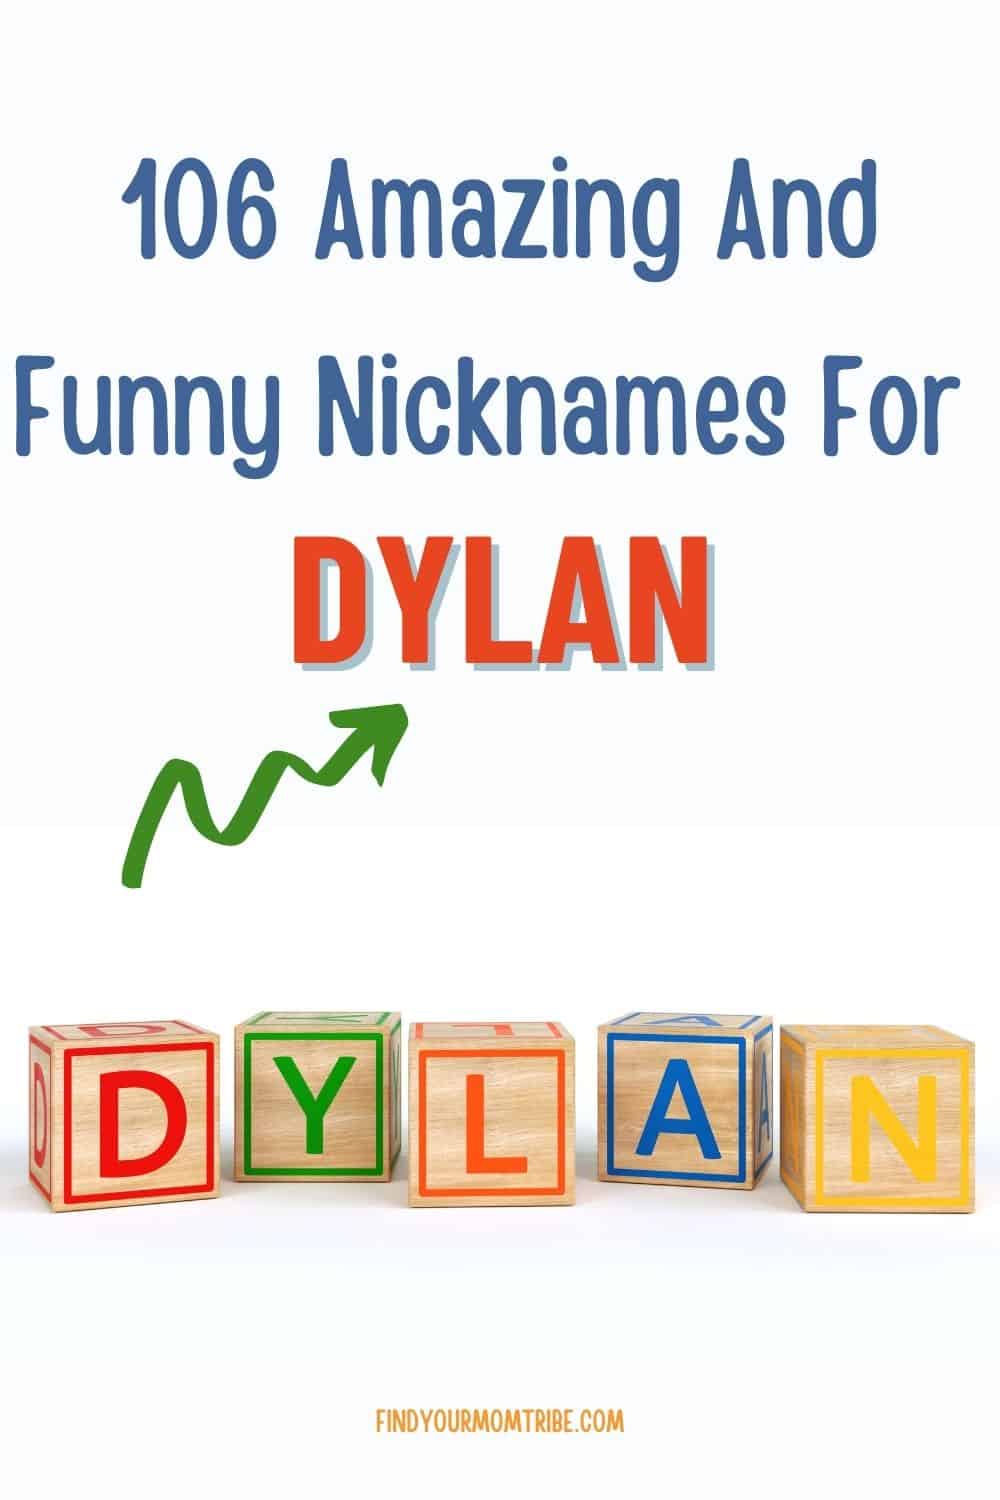  Pinterest nicknames for dylan